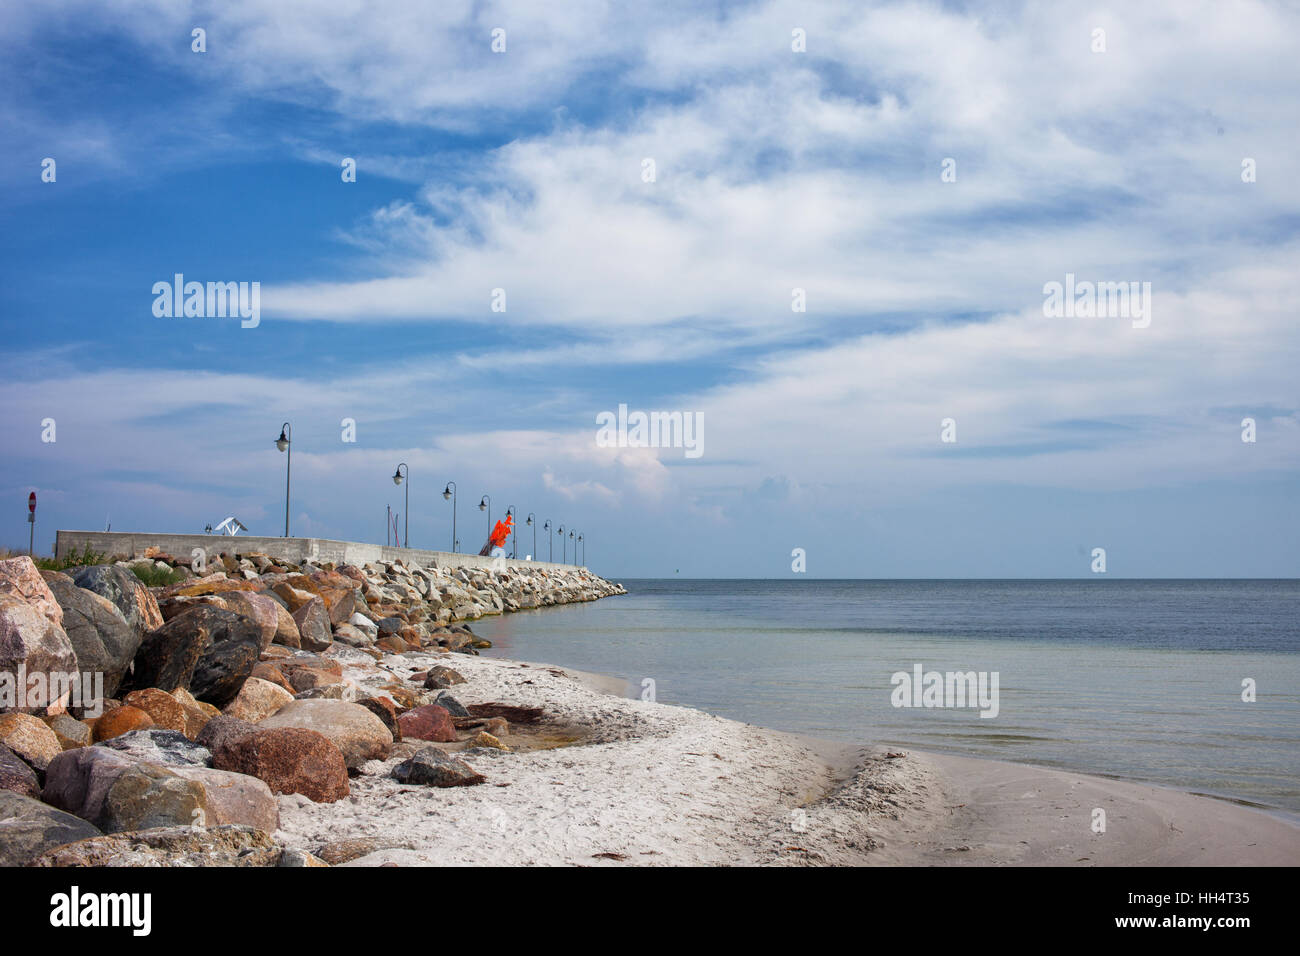 Porta di calcestruzzo con molo frangiflutti e piccola spiaggia a Mar Baltico bay sulla penisola di Hel in Kuznica, Polonia Foto Stock